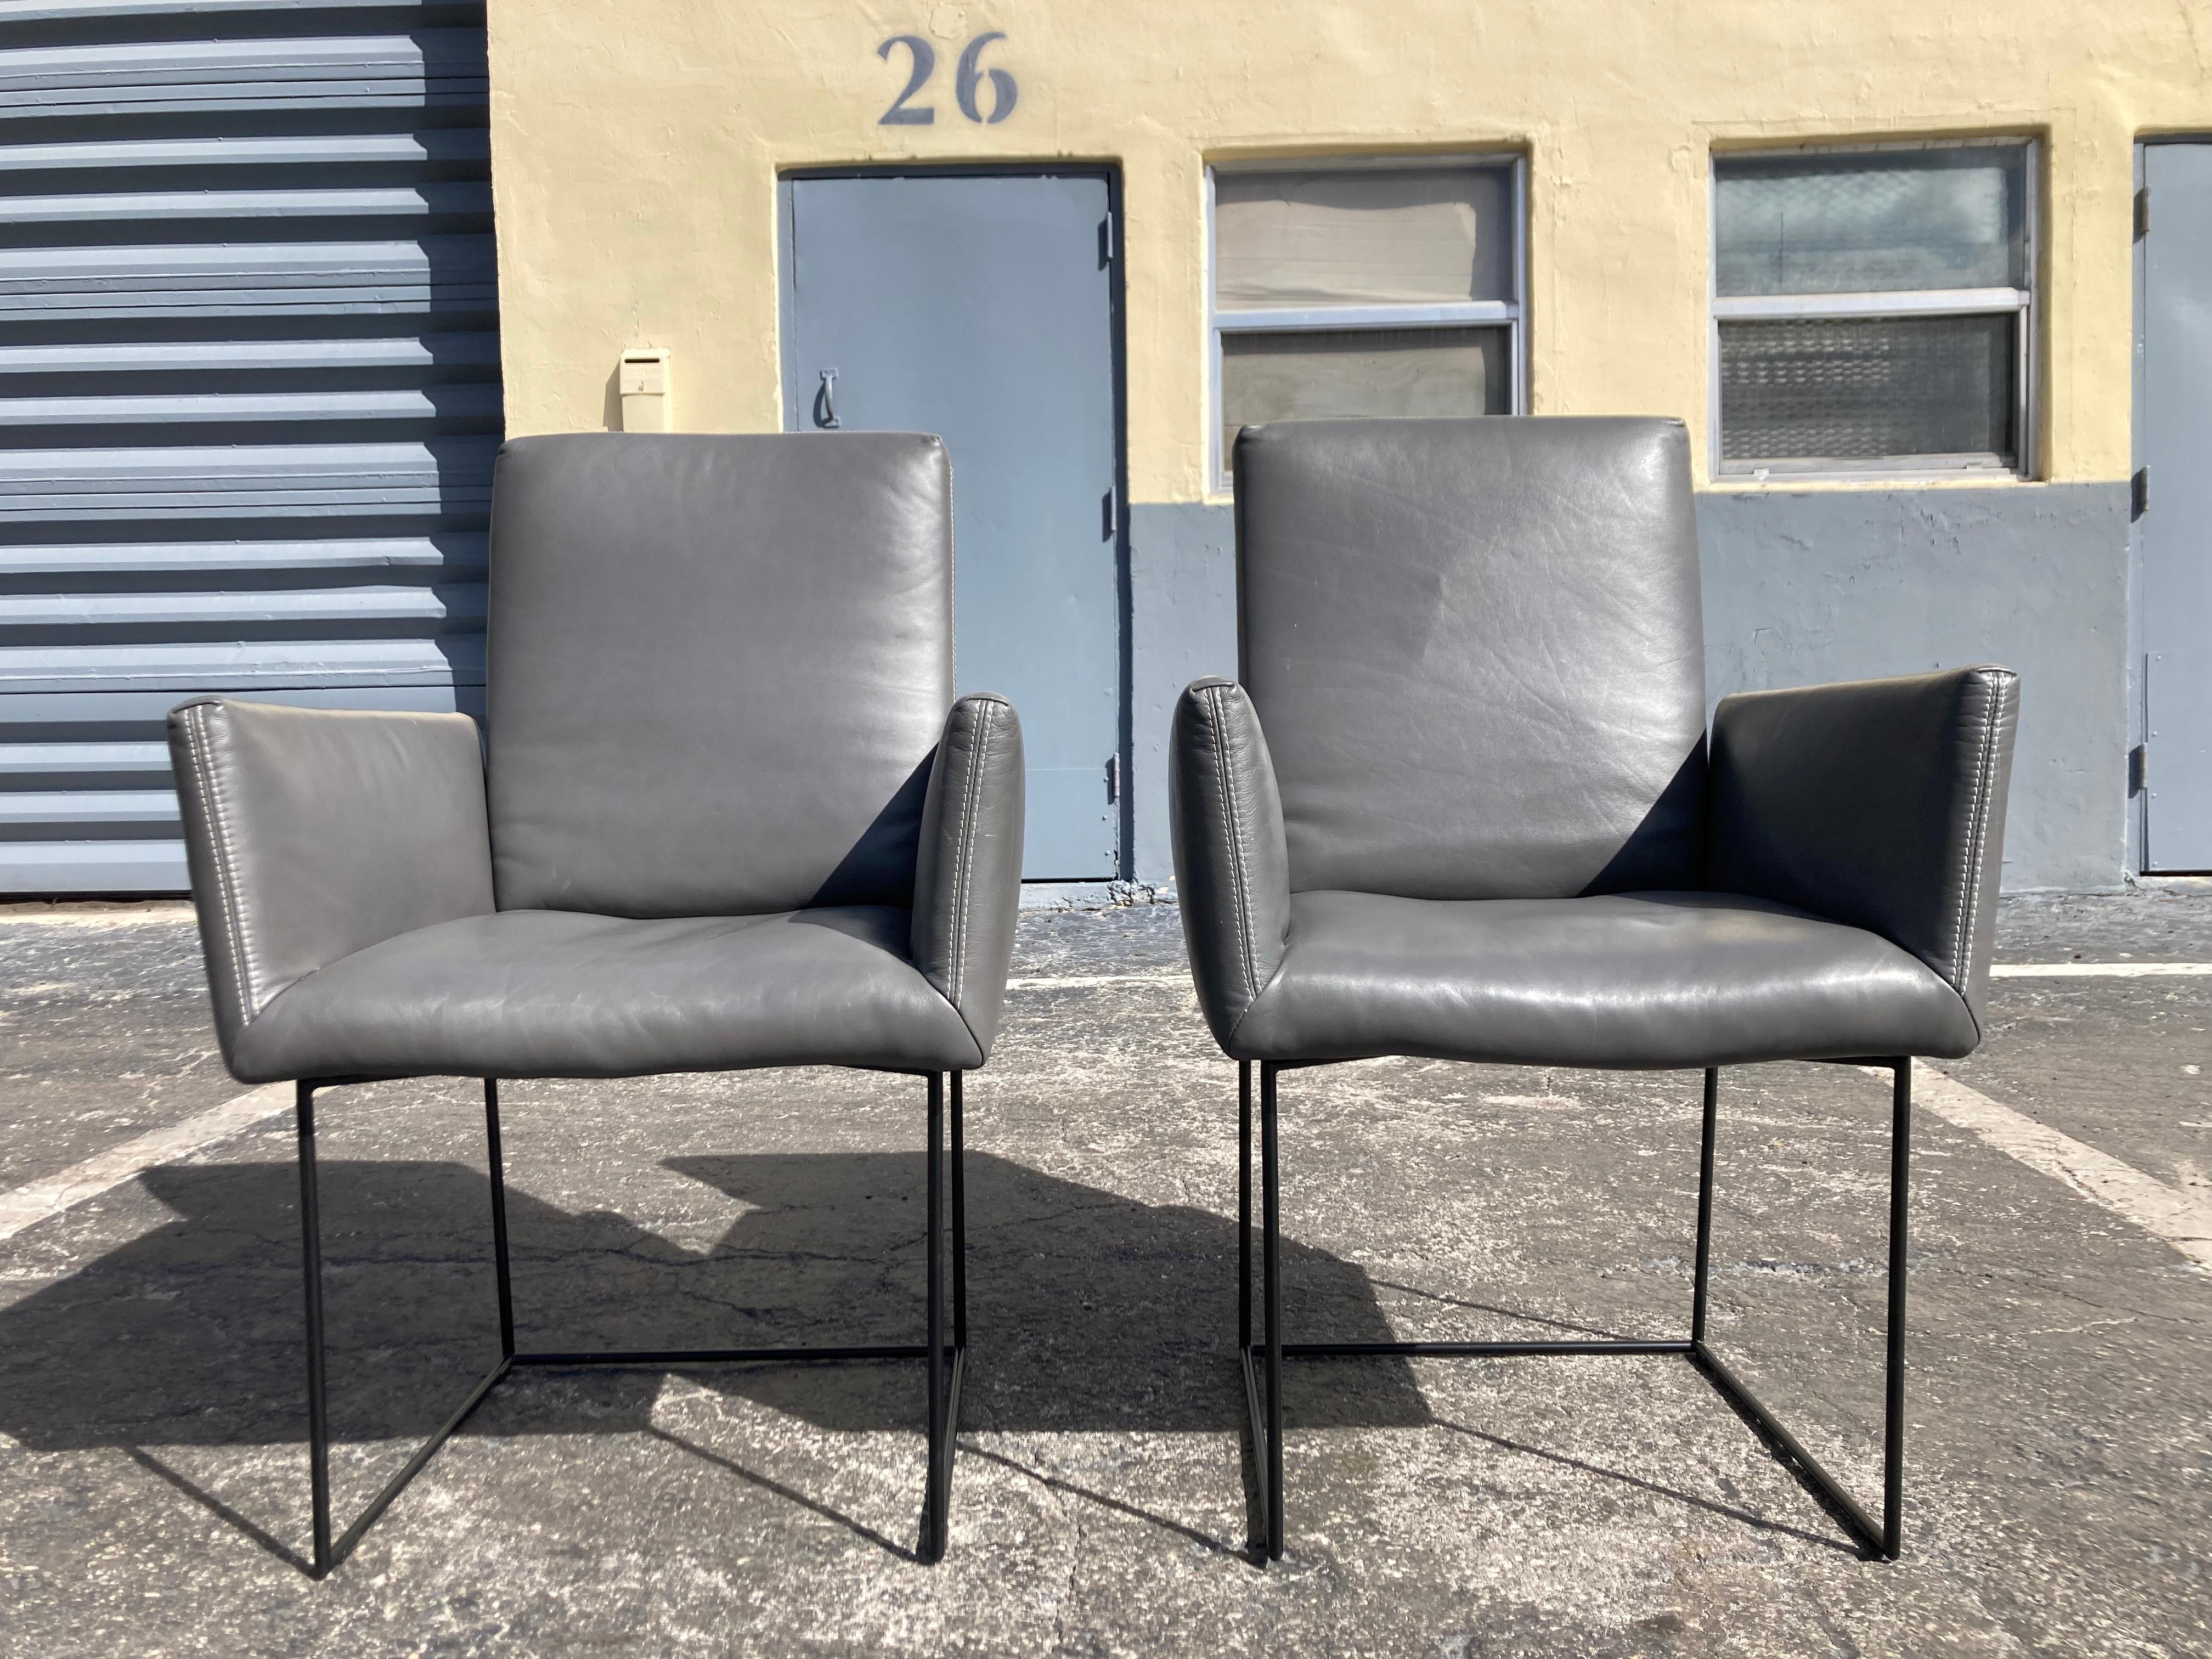 Paire de fauteuils en cuir Casino conçus par Kurt Beier et Kati Quinger pour Bullfrog. Fabriqué en Allemagne, cuir gris et base en acier noir. Le dos est réglable.